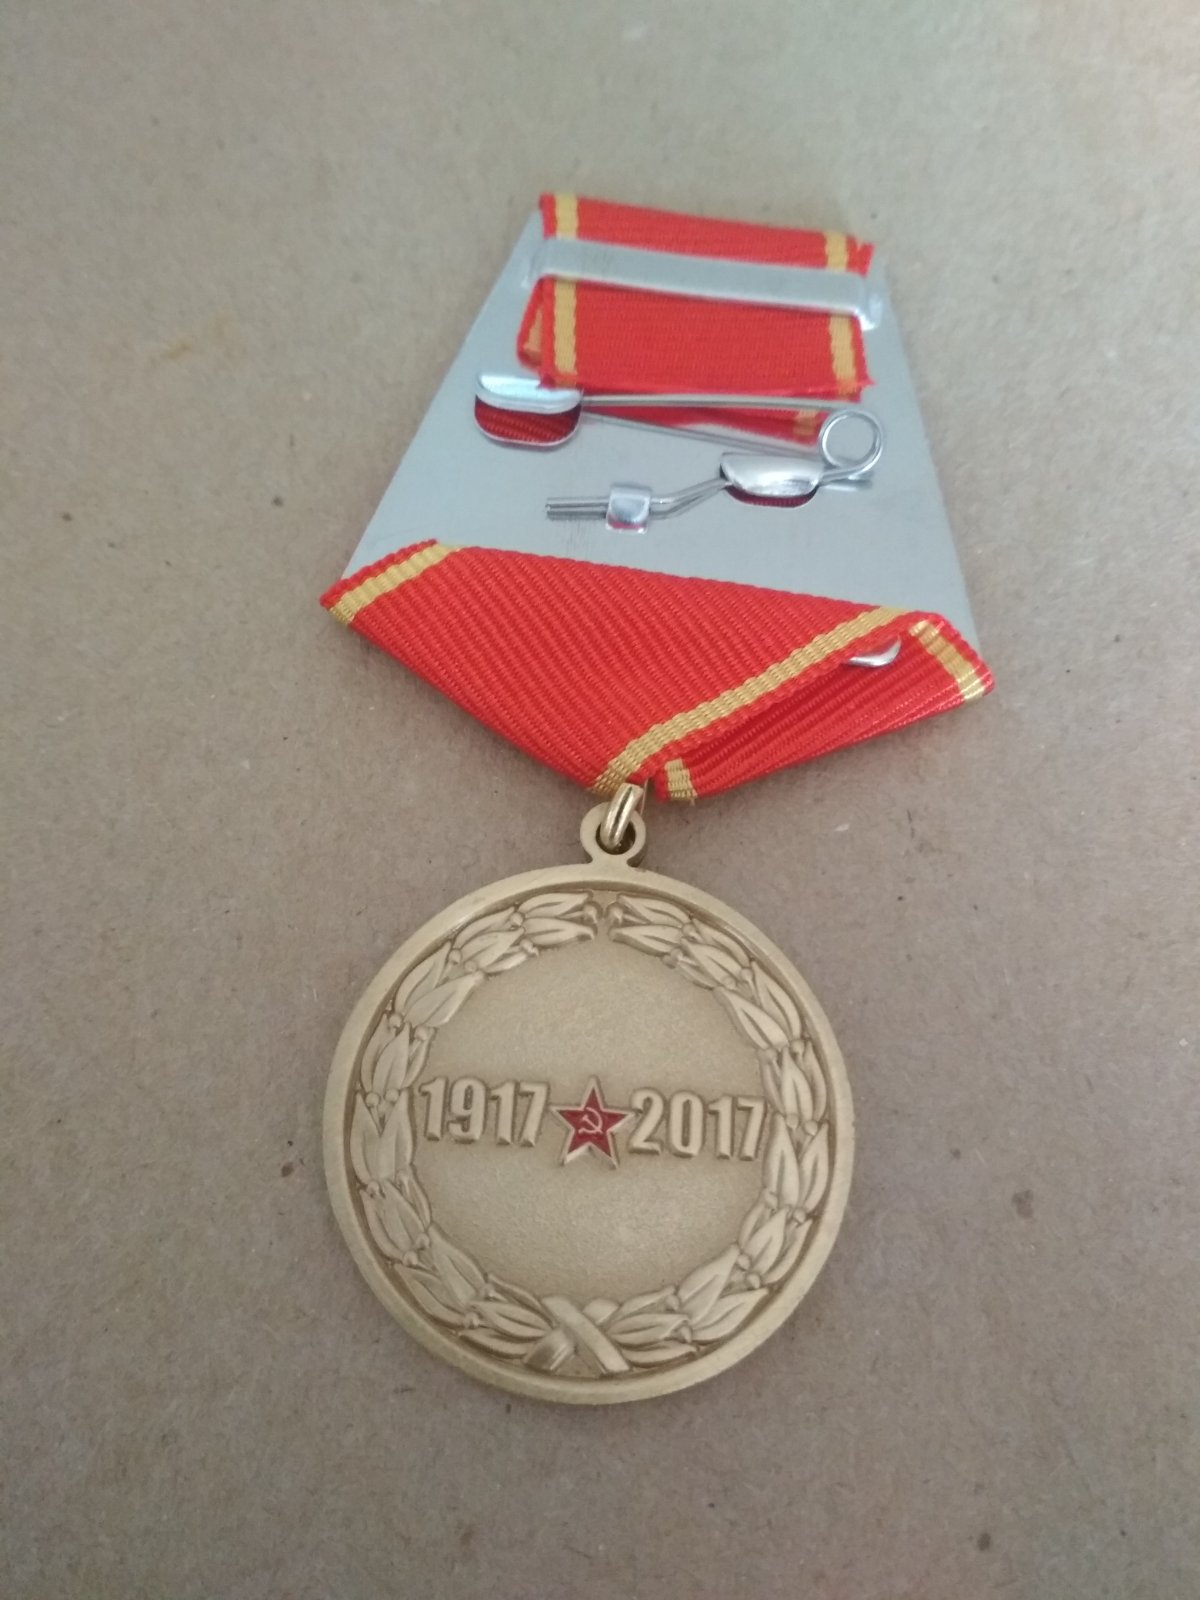 Медаль "100 лет Октябрьской революции"